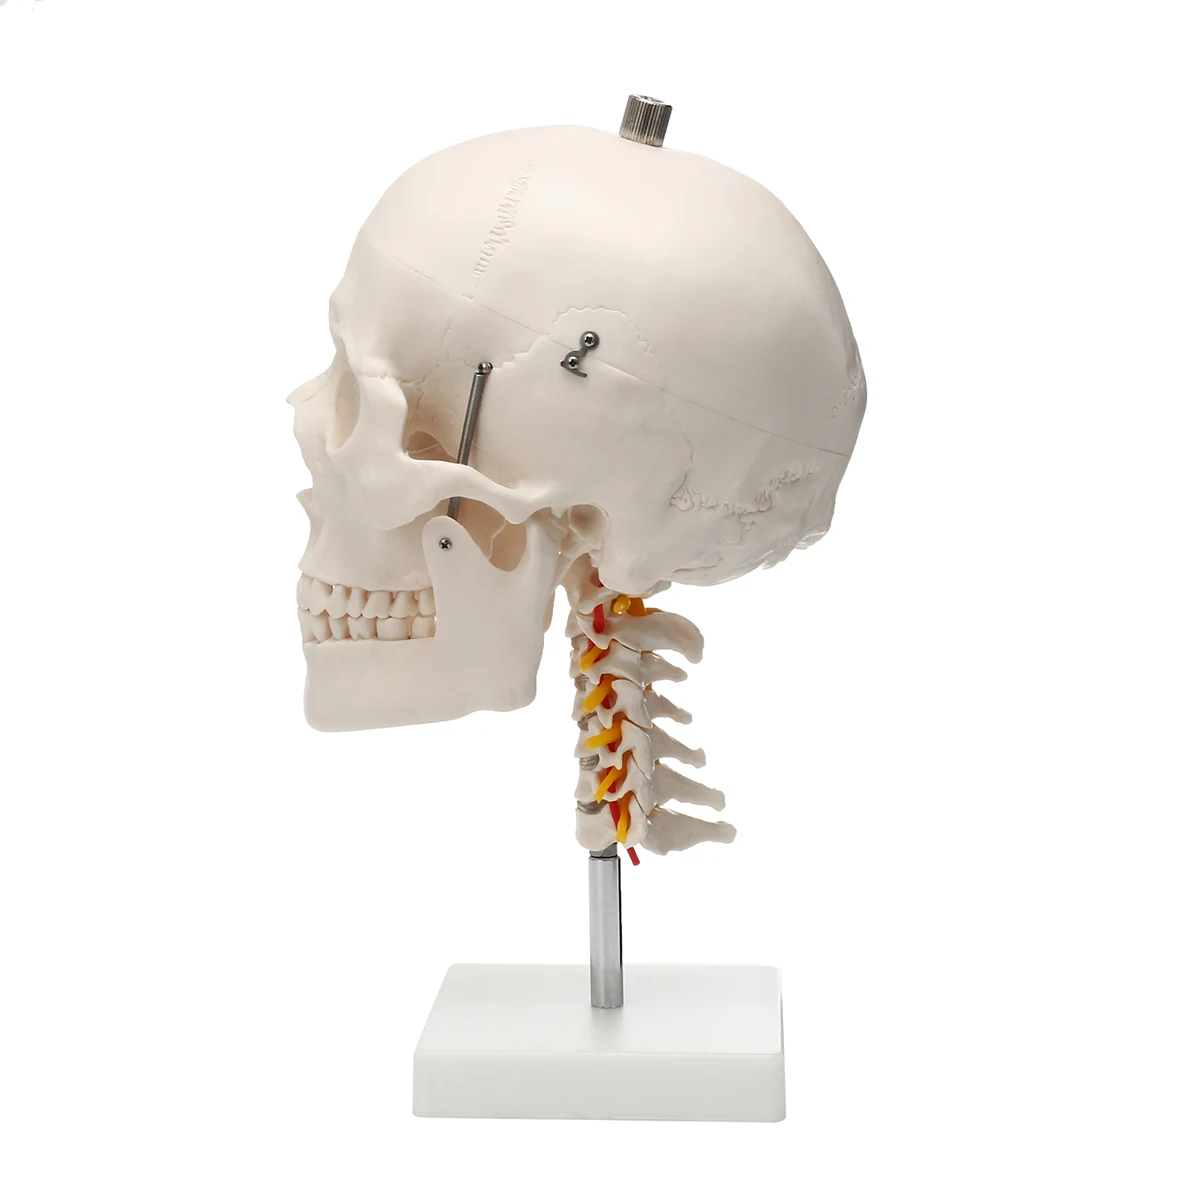 1:1 Размер жизни человеческий череп анатомический череп для изучения анатомии модель шейного отдела позвоночника скелетная школьная образовательная медицинская учебная